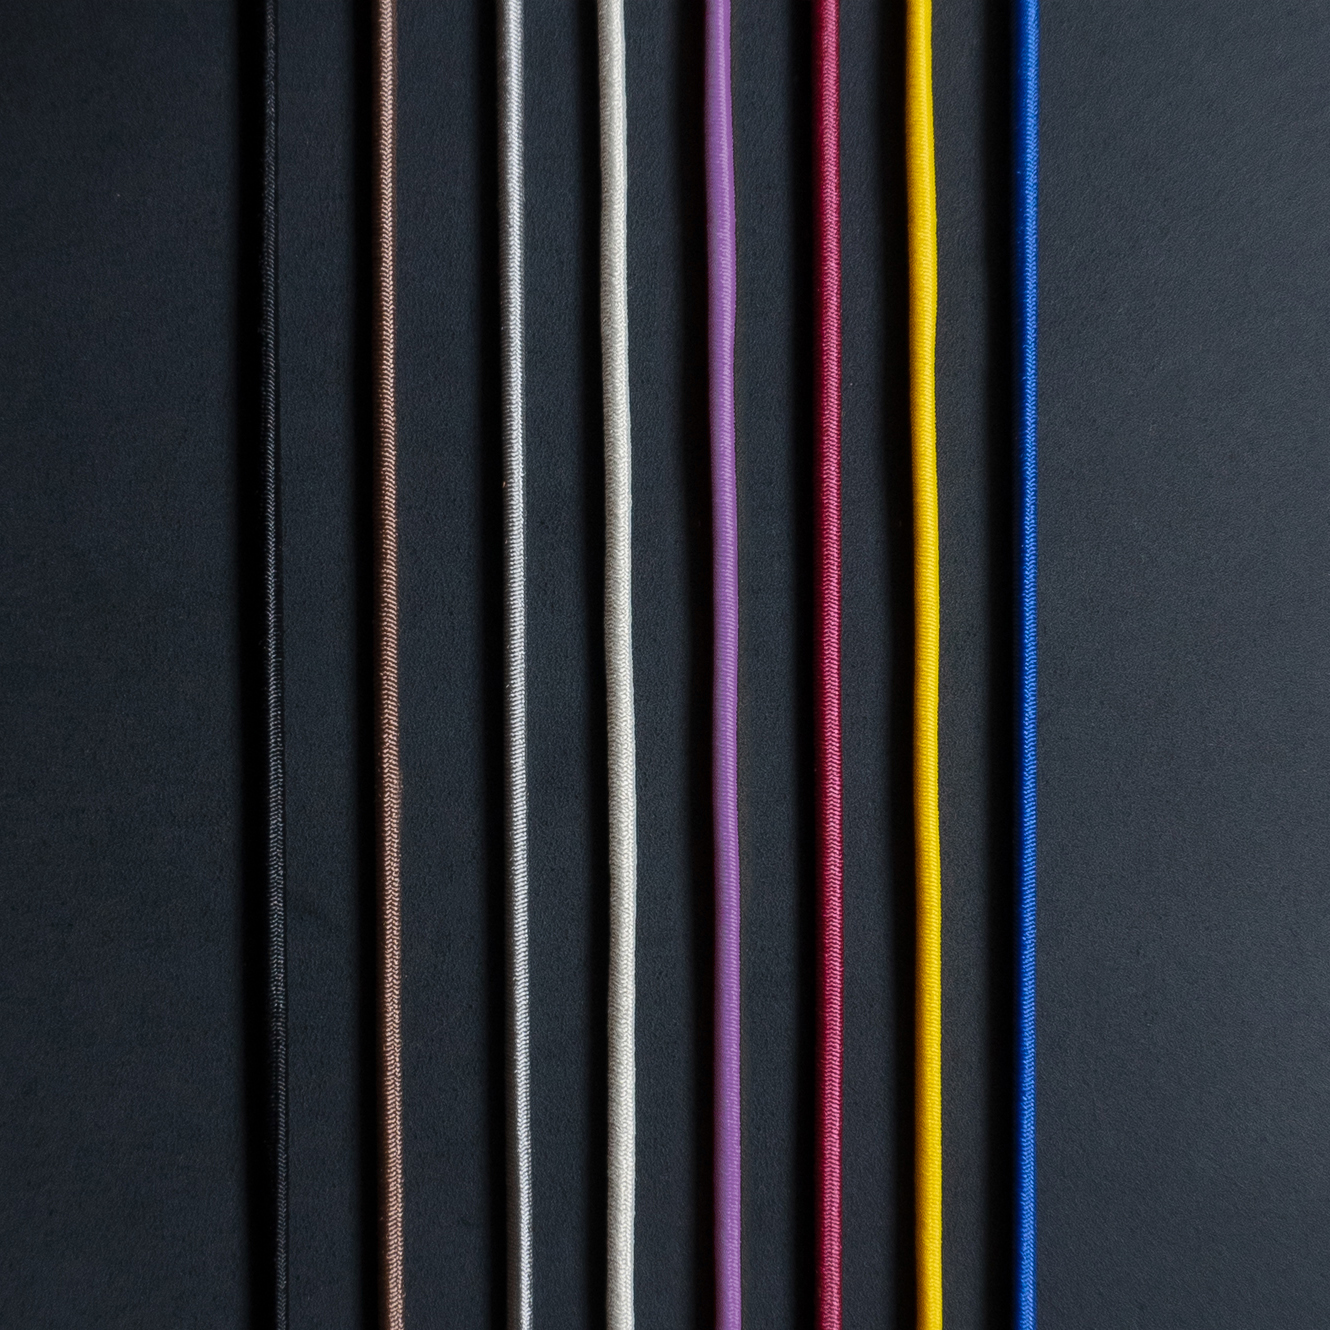 Gummibänder für Notizbuchhüllen in den Farben Schwarz, Braun, Grau, Creme, Rot, Gelb und Blau auf kohlefarbenem Naturleder.